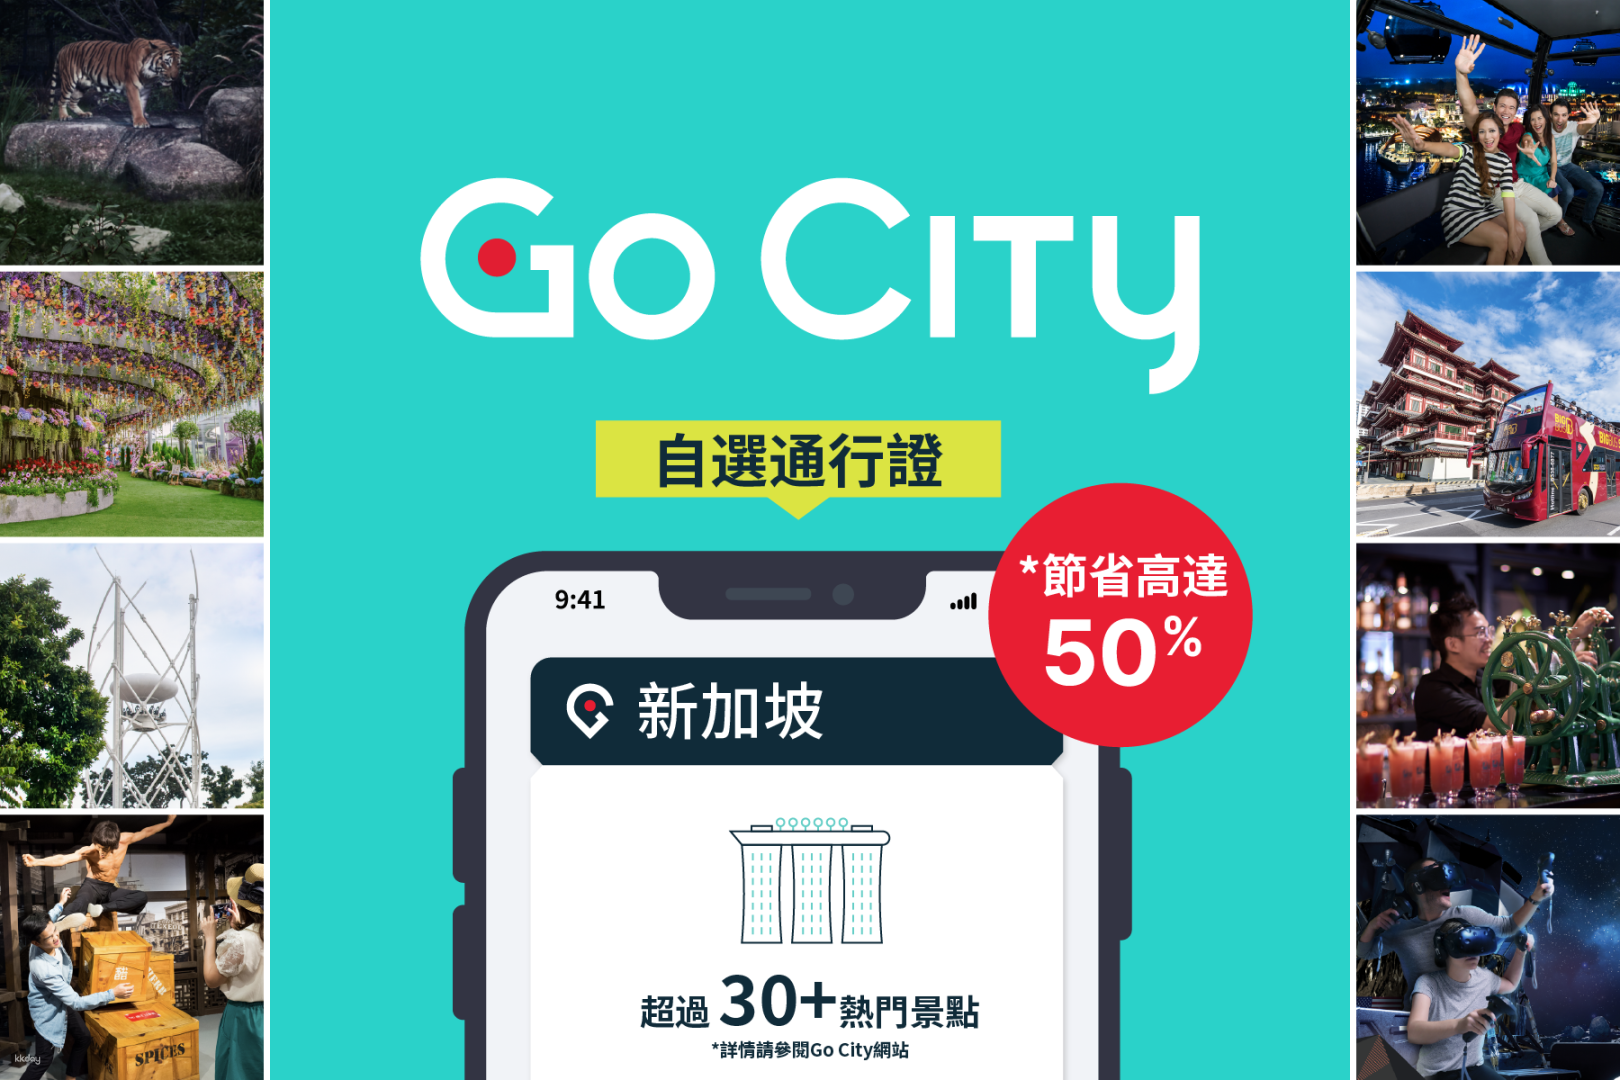 新加坡-Go City探索者通行證| 包括濱海灣花園和新加坡動物園入場,限時優惠